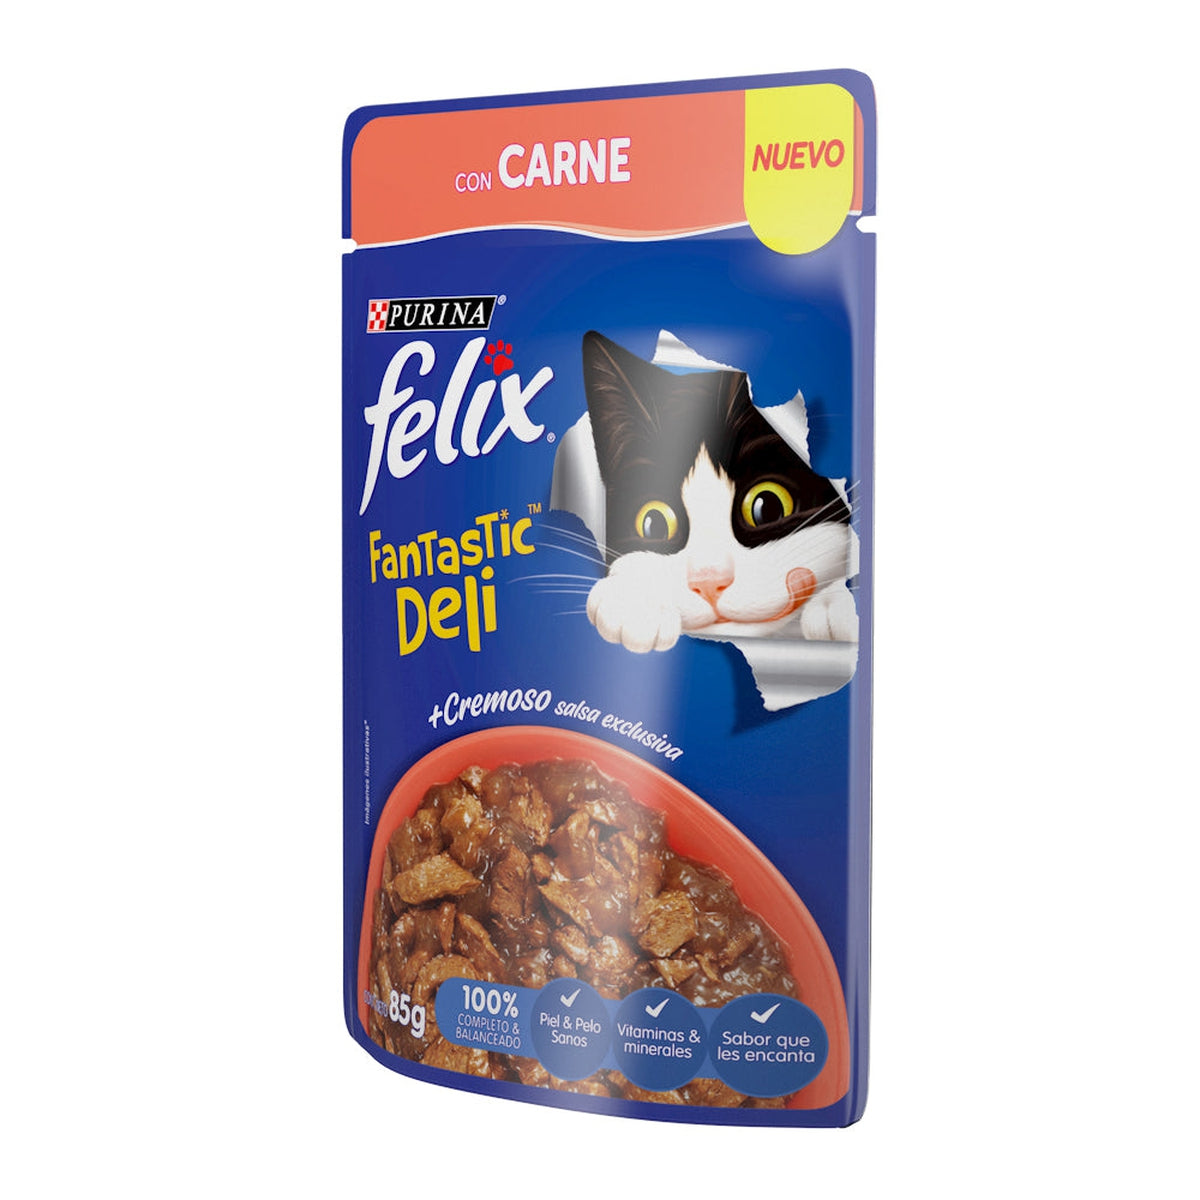 Purina Felix Fantastic Deli con Carne 24 Pouches